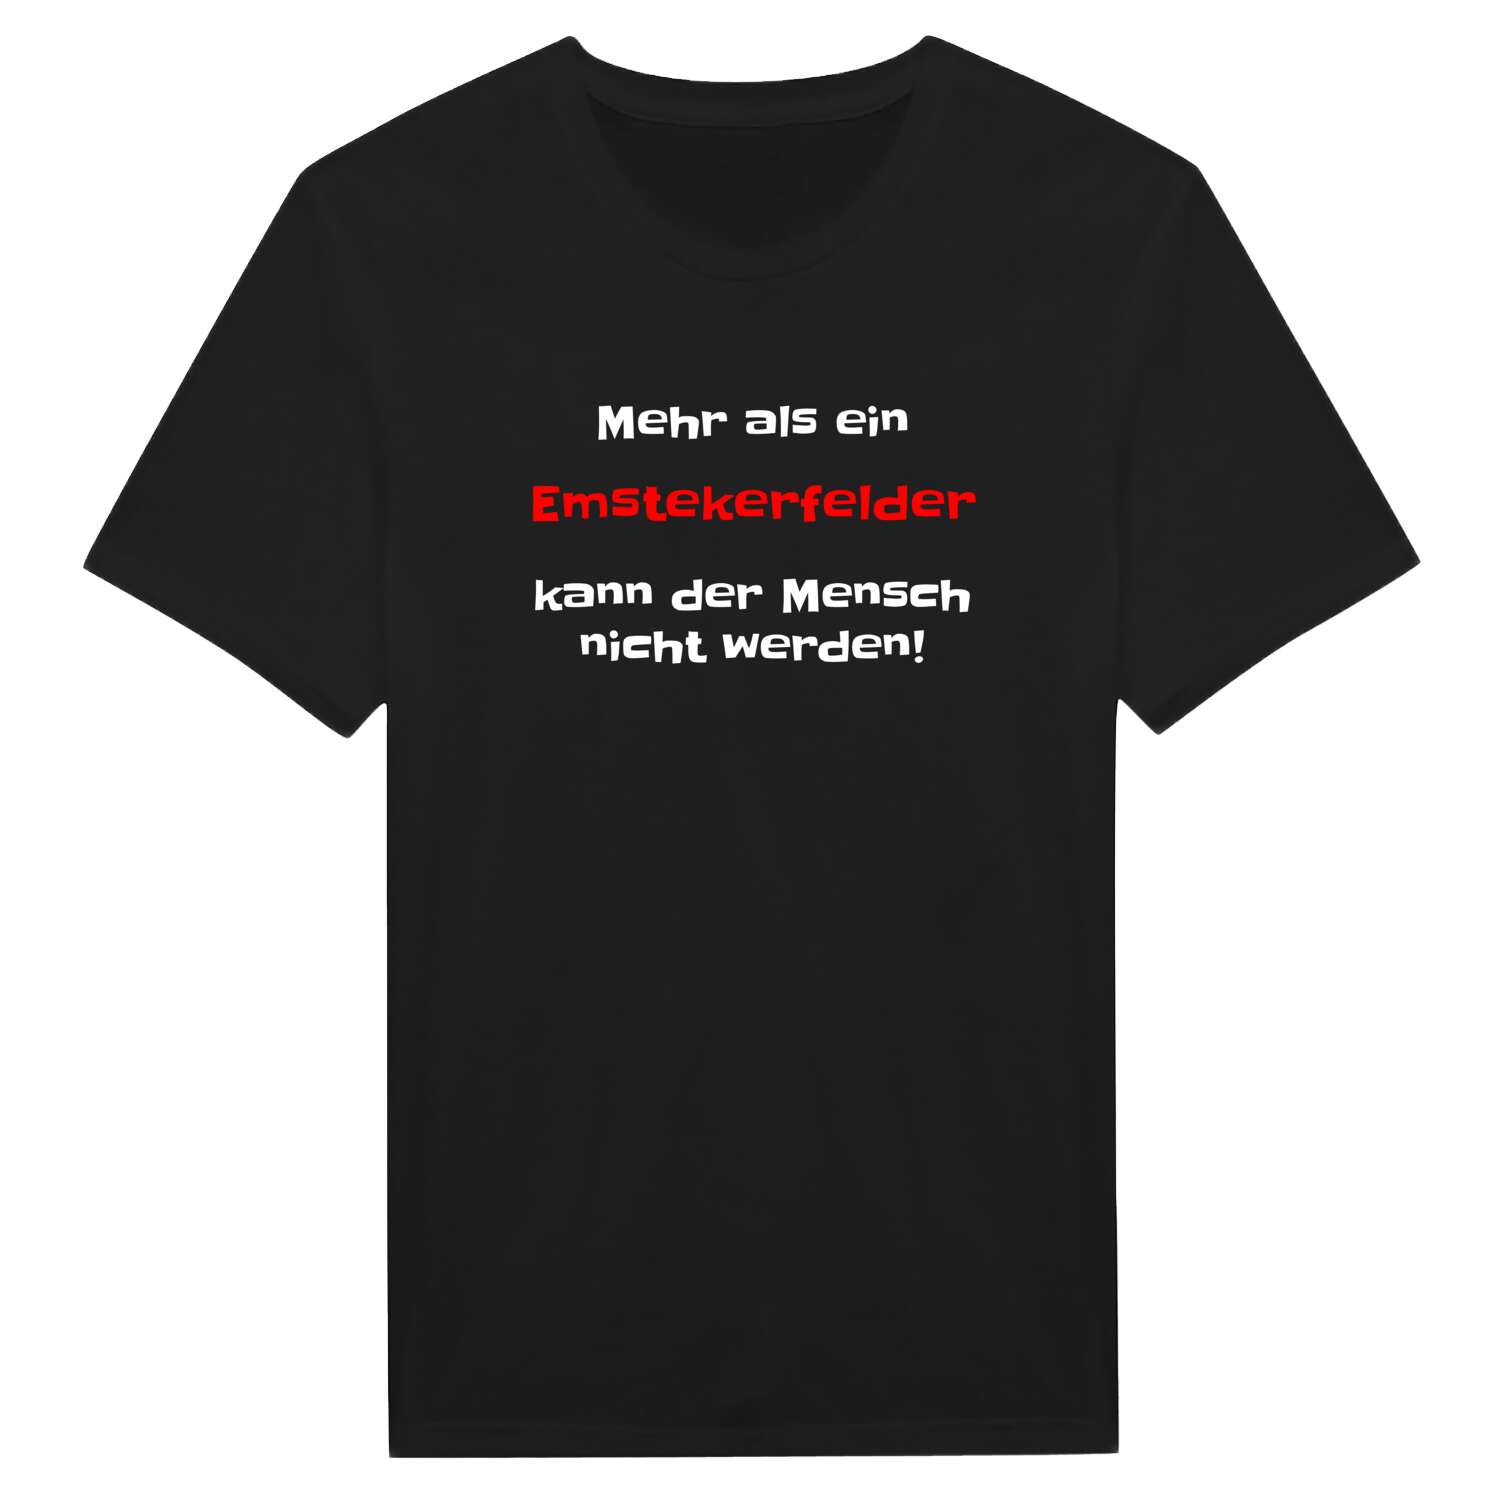 Emstekerfeld T-Shirt »Mehr als ein«